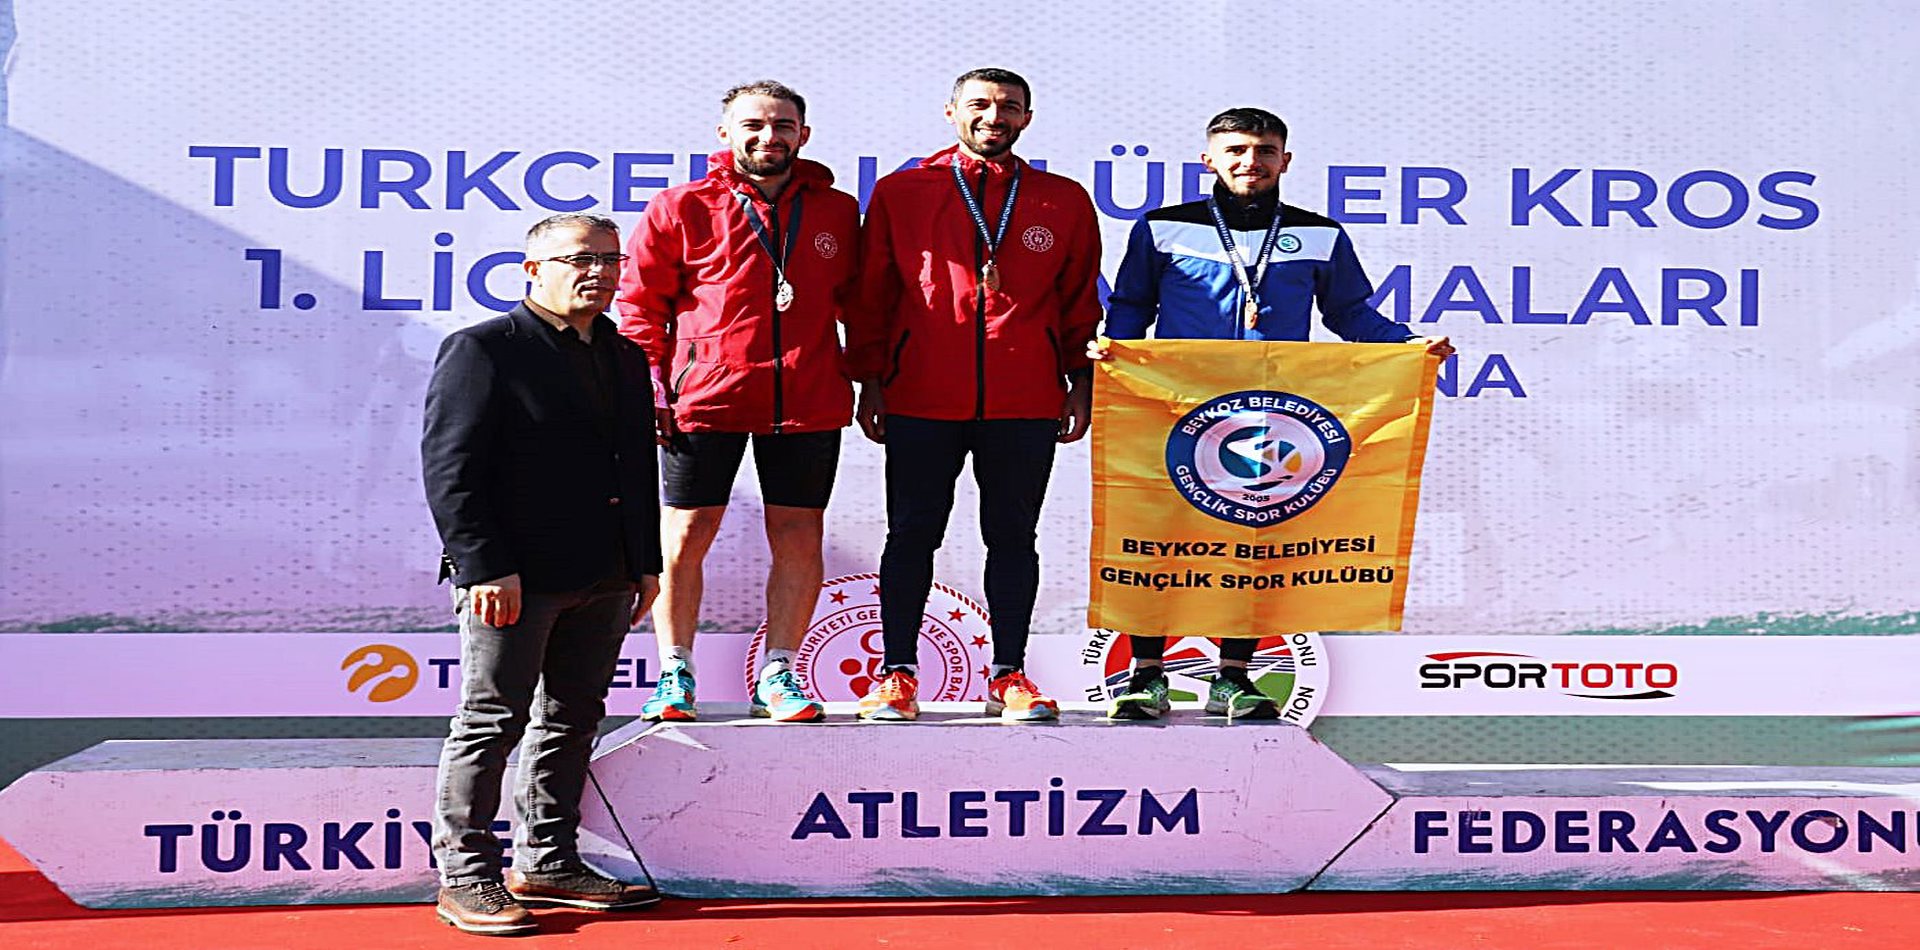 Turkcell Kulüpler Kros 1.’nci Ligi U20-U18 Elemeleri sona erdi.